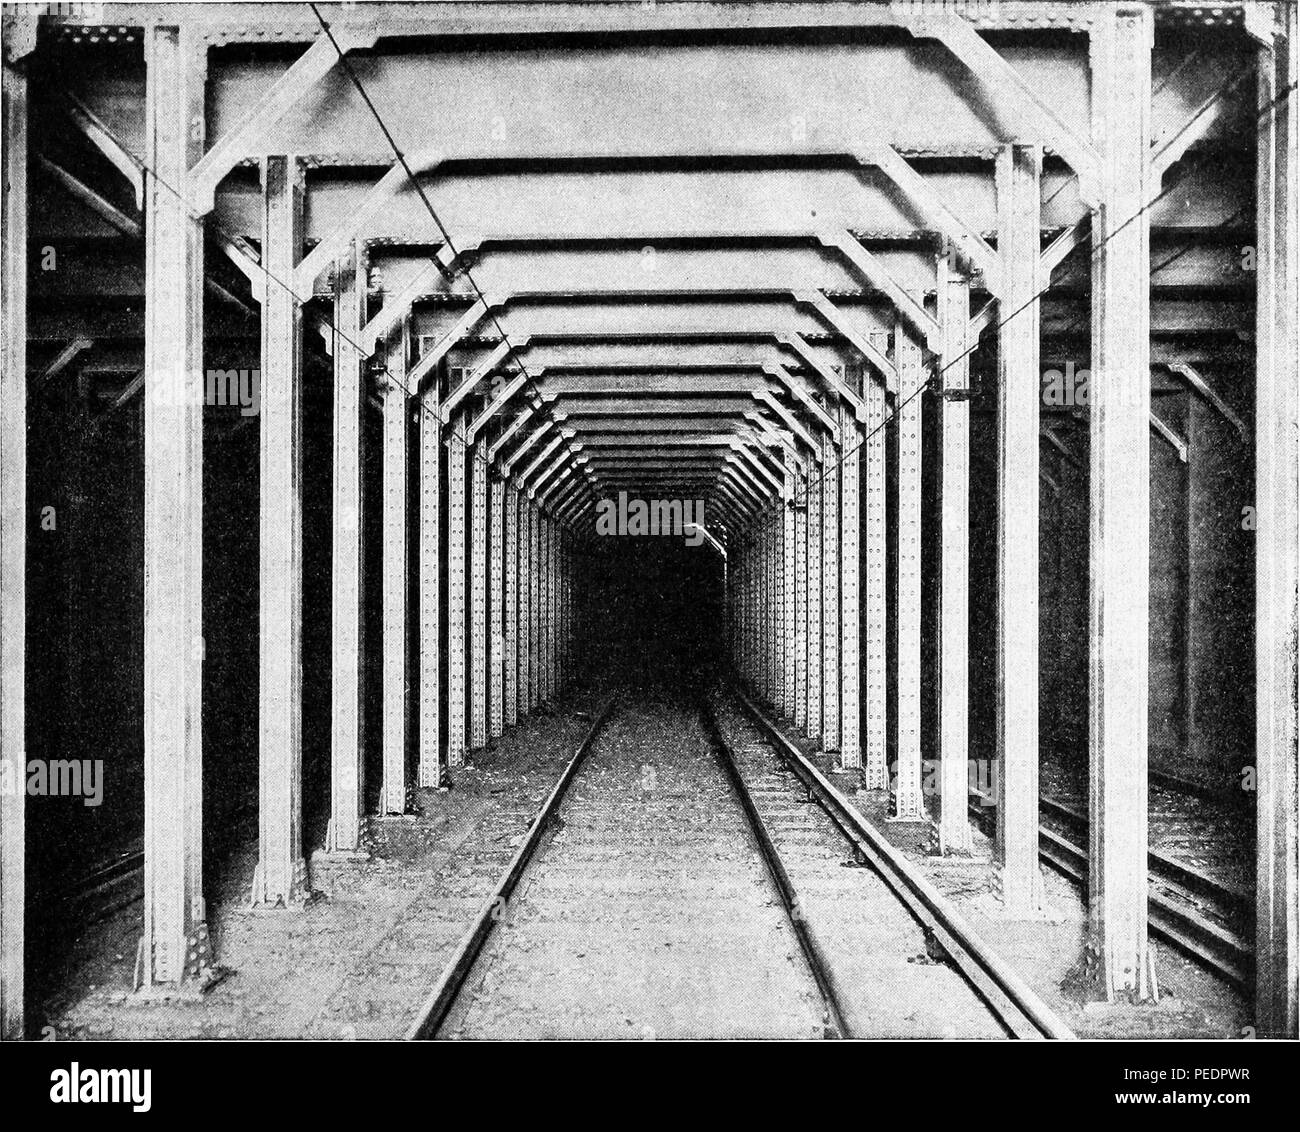 Fotografía en blanco y negro estándar de acero vigas y postes utilizados para la construcción de un túnel subterráneo de la ciudad de Nueva York a principios del siglo xx, 1884. Cortesía de Internet Archive. () Foto de stock